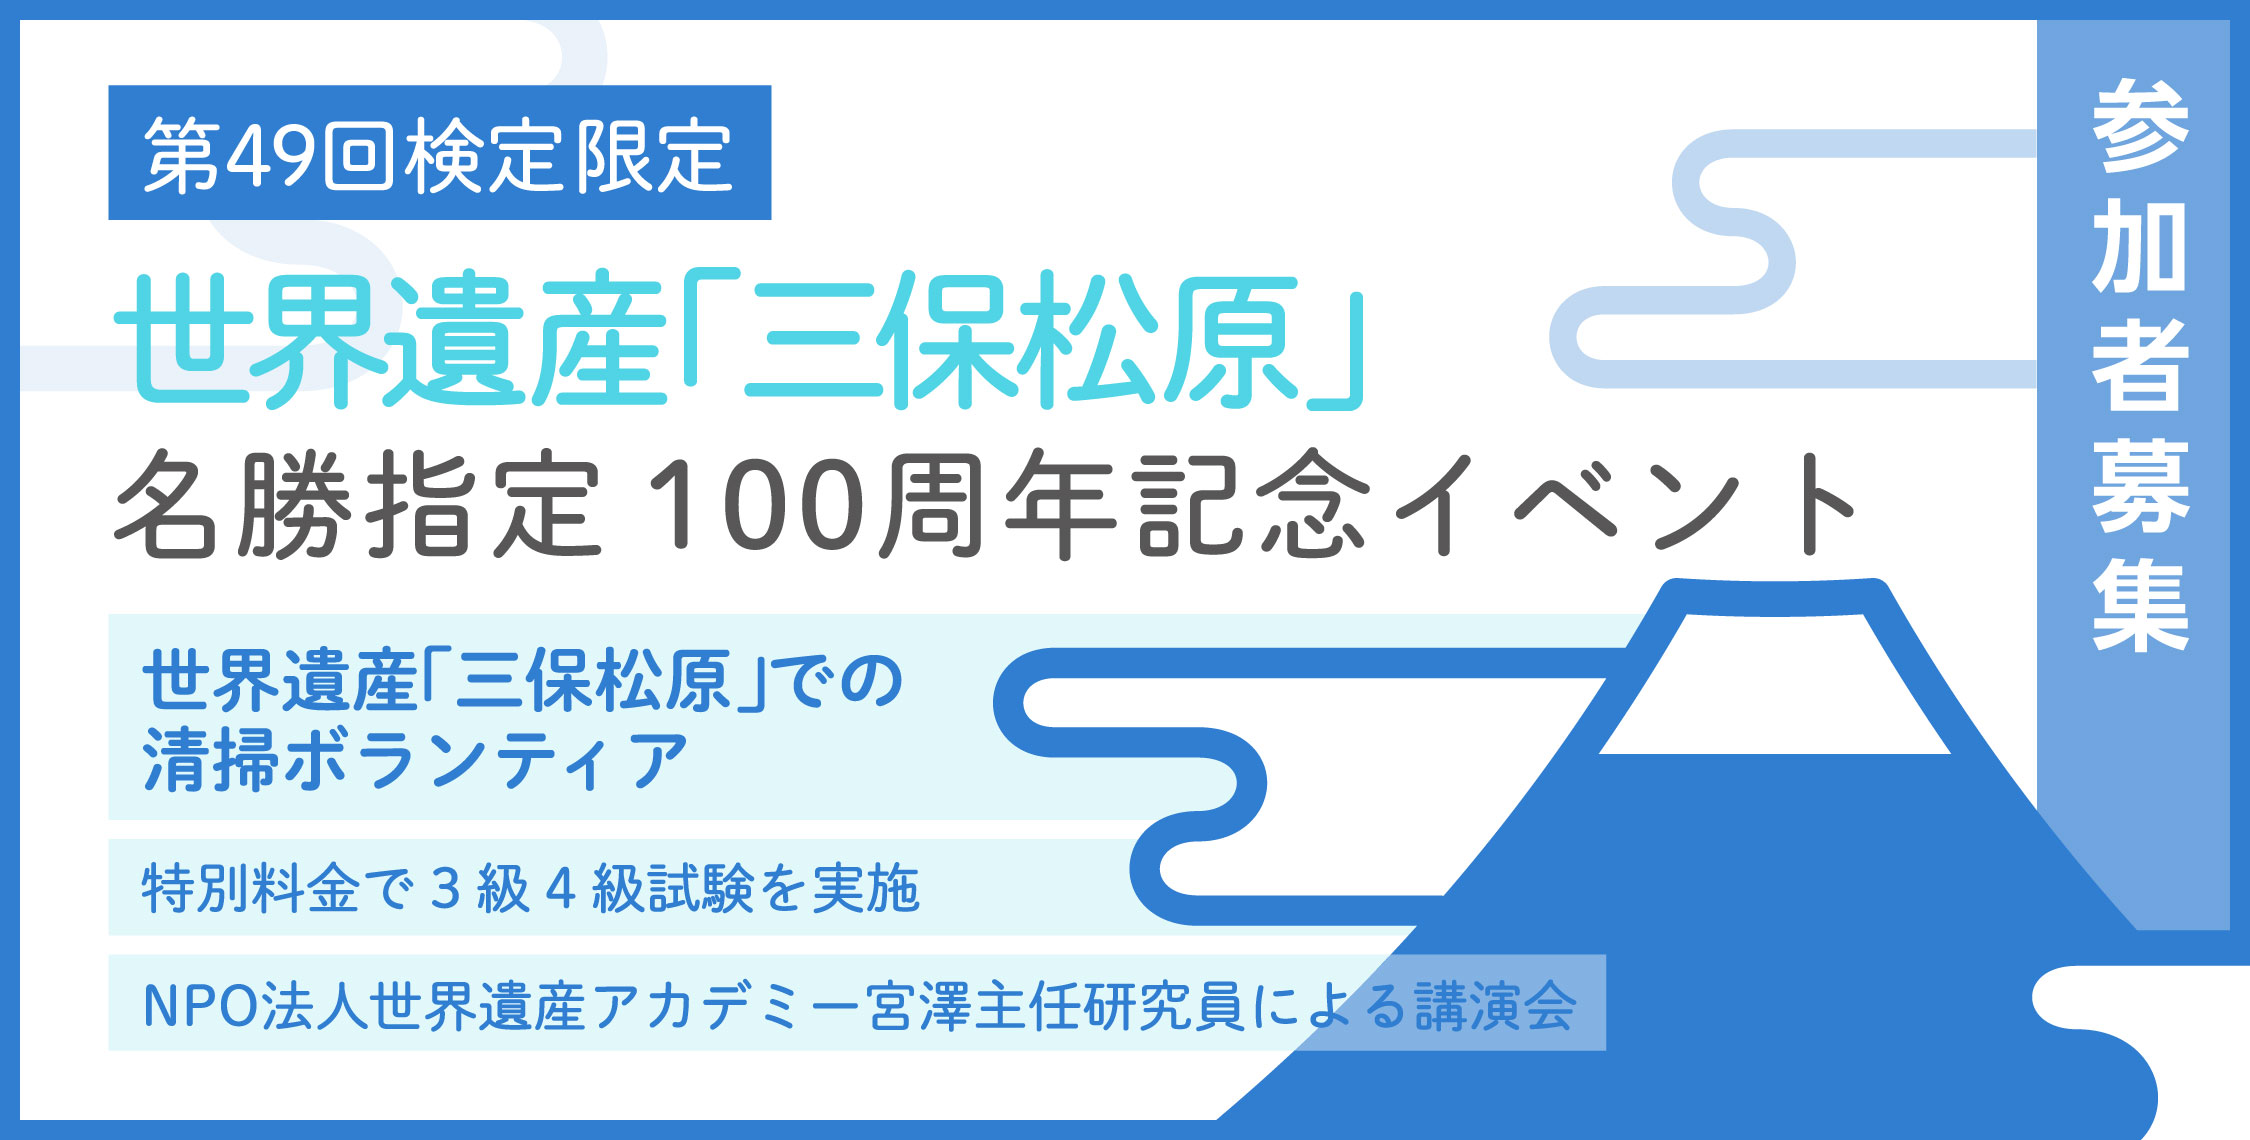 世界遺産「三保松原」名勝指定100周年記念イベント